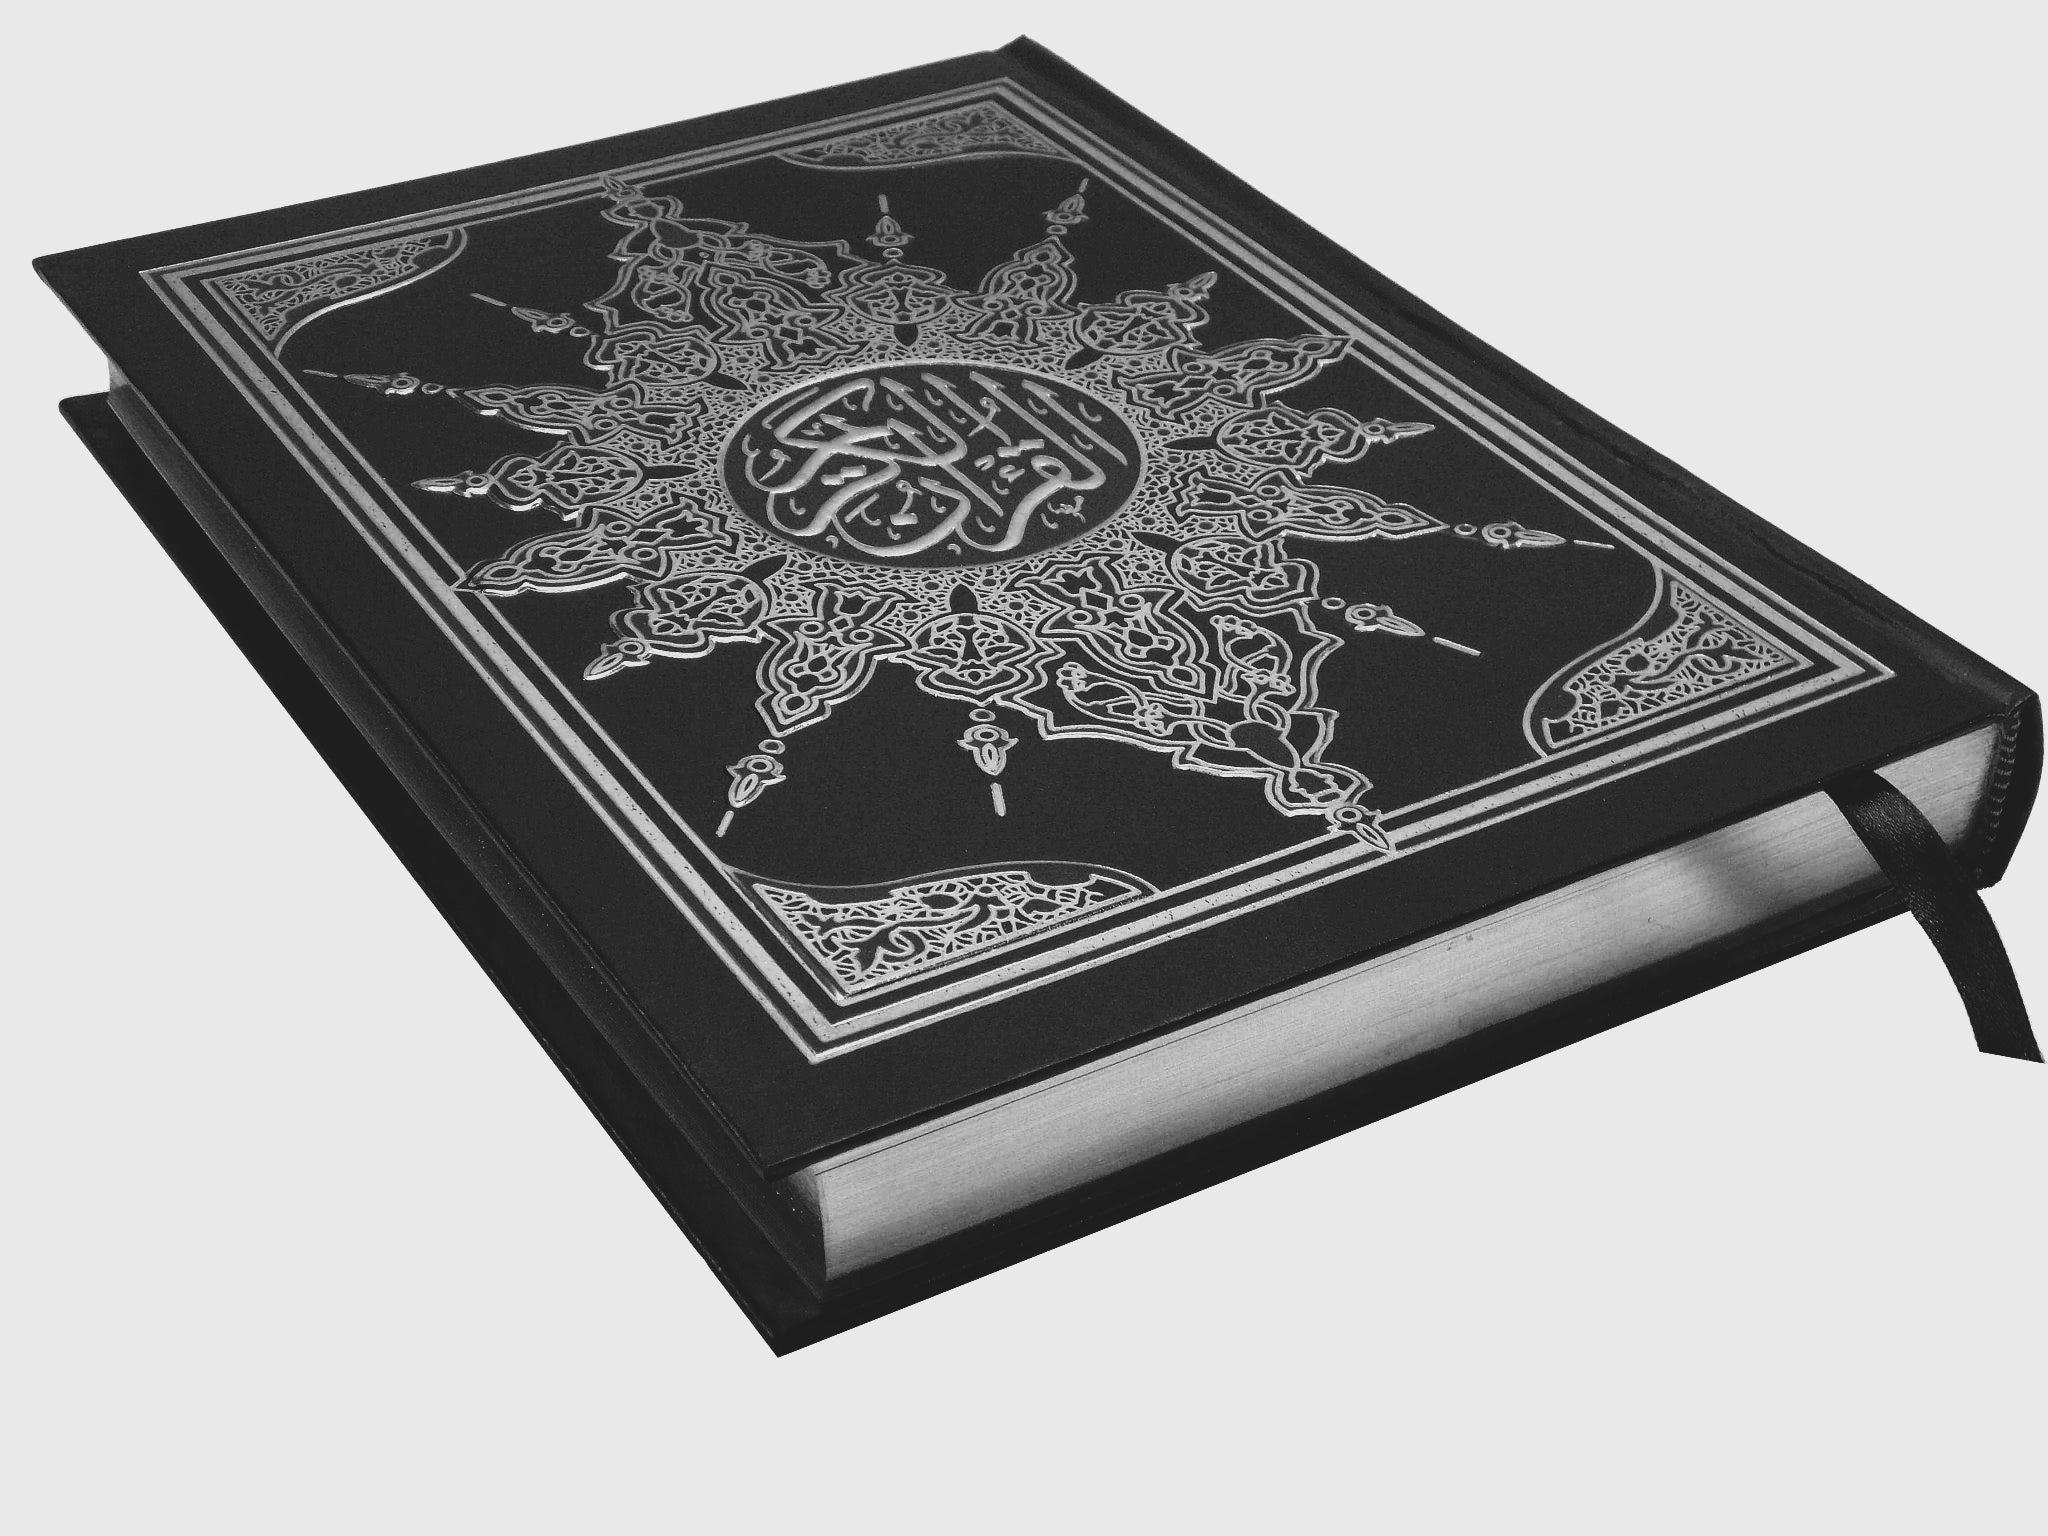 القرآن الكريم بالرسم العثماني كتب إسلامية السحار للطباعة أسود 17*24